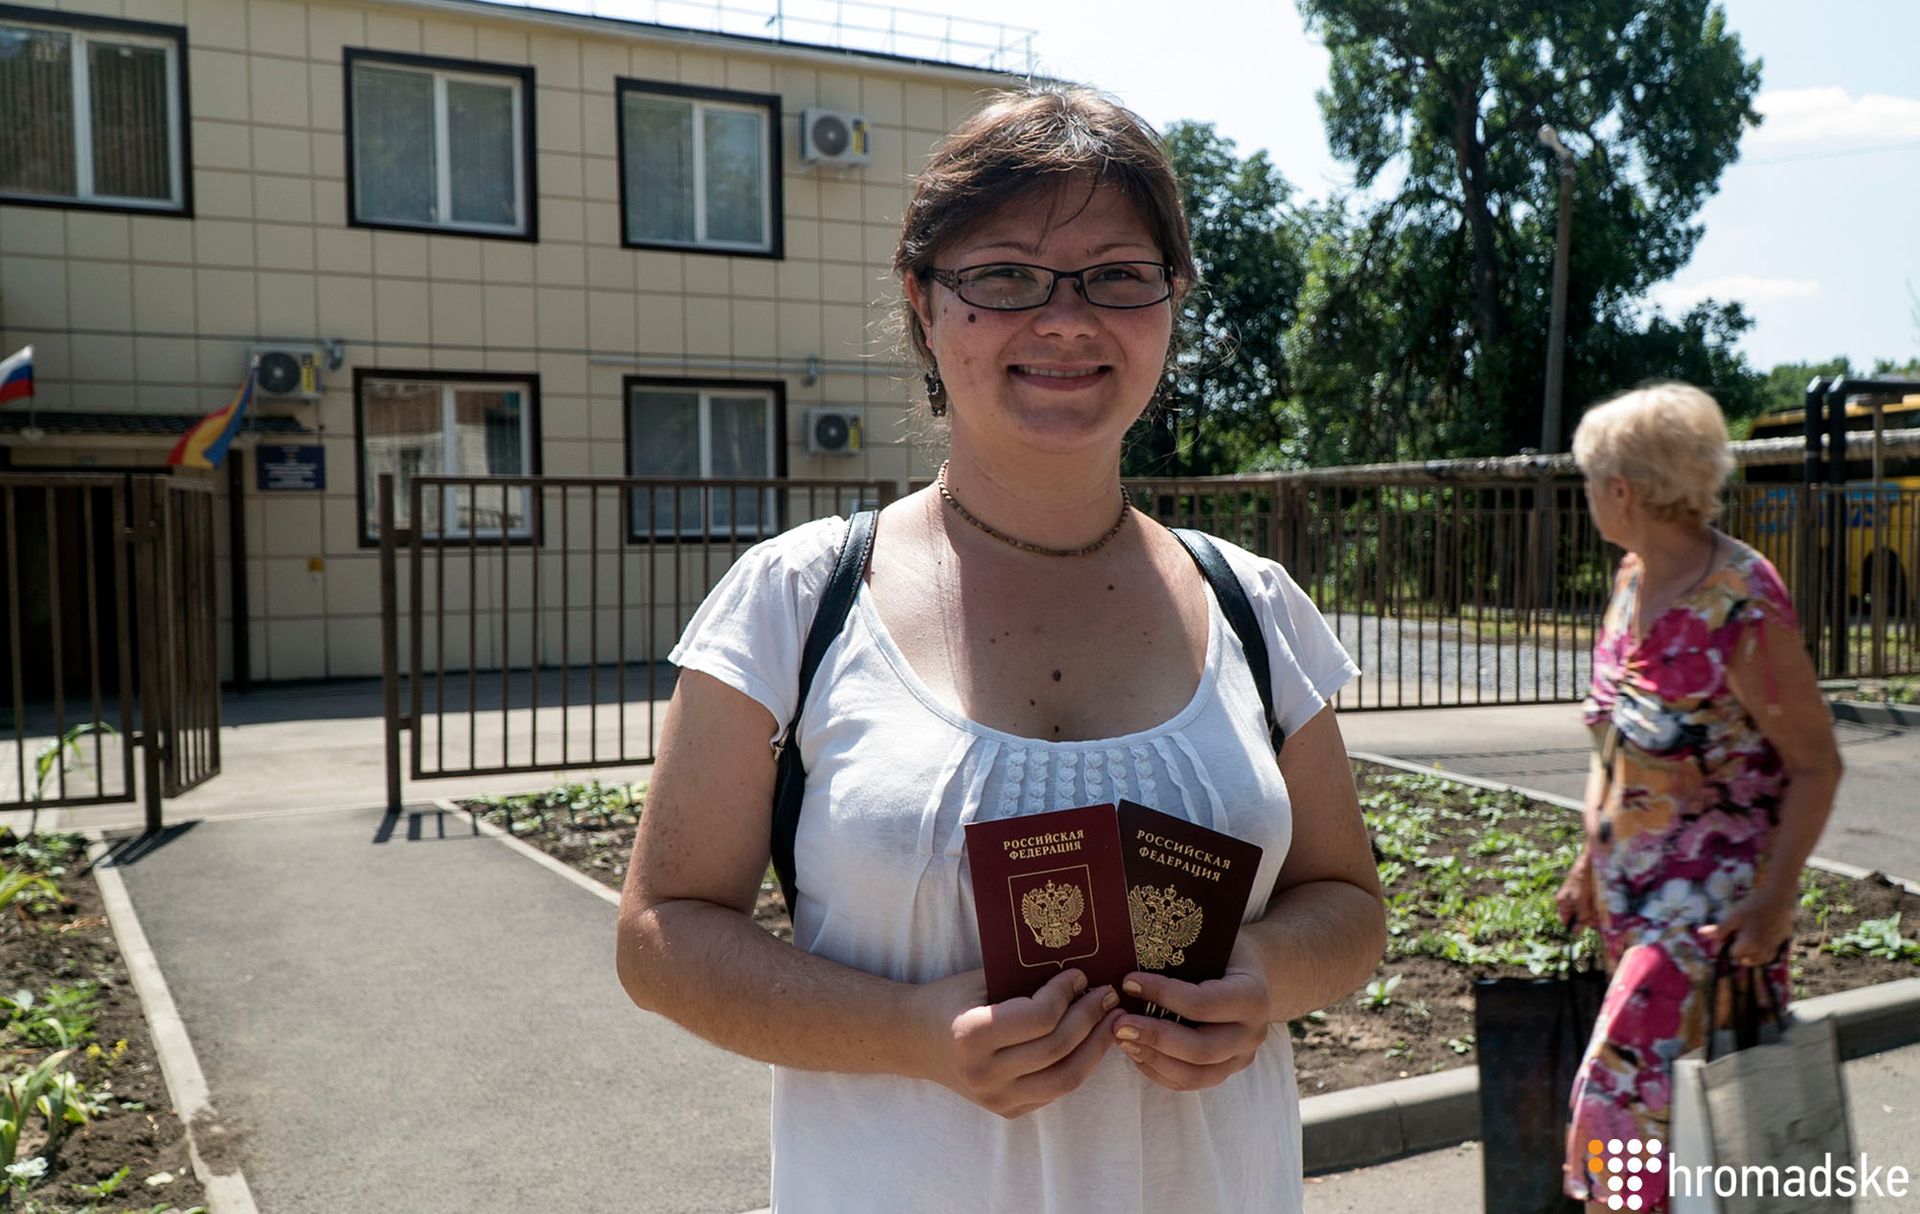 Дарья родилась и живет в Луганске, работает массажисткой в местном салоне красоты. Она получила паспорт РФ, Новошахтинск, 18 июня 2019 года. Фото: Александр Кохан/Громадское